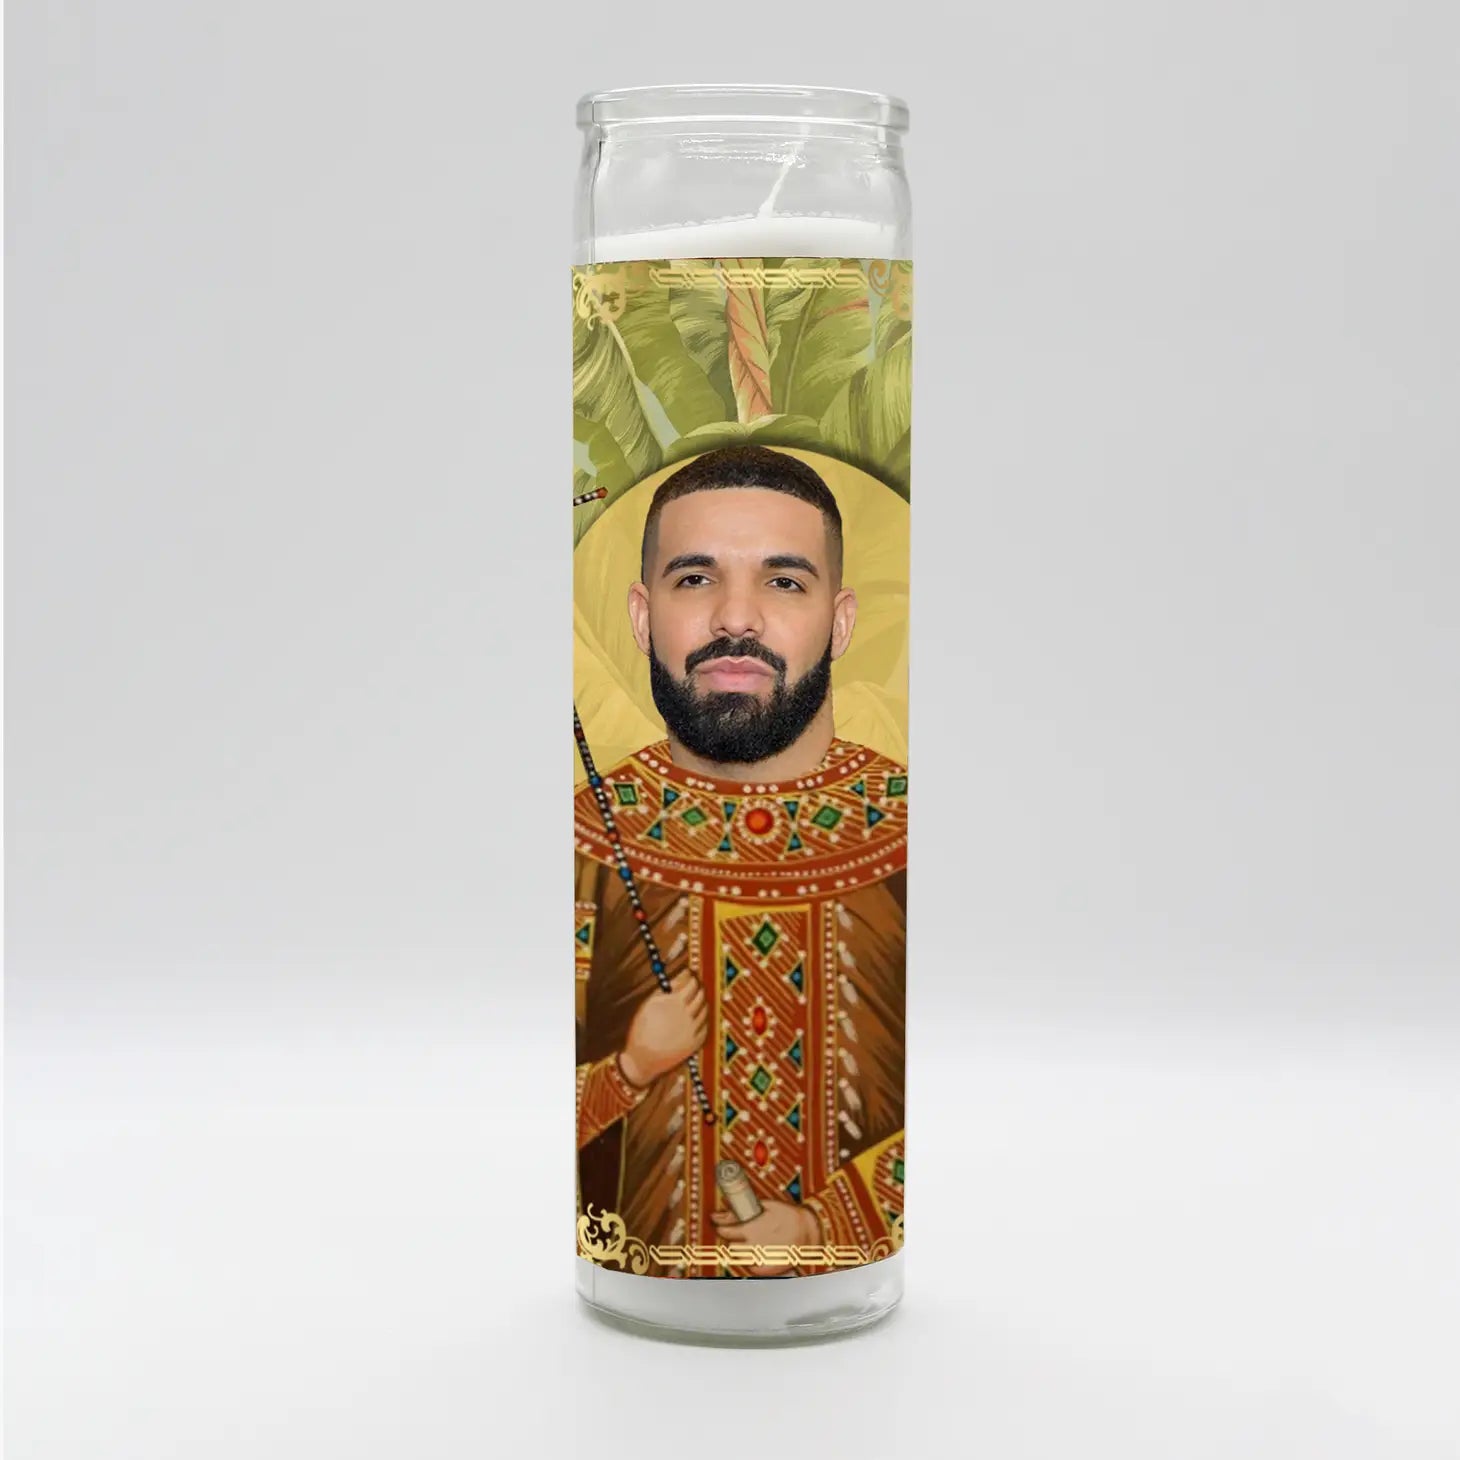 Drake Prayer Candle